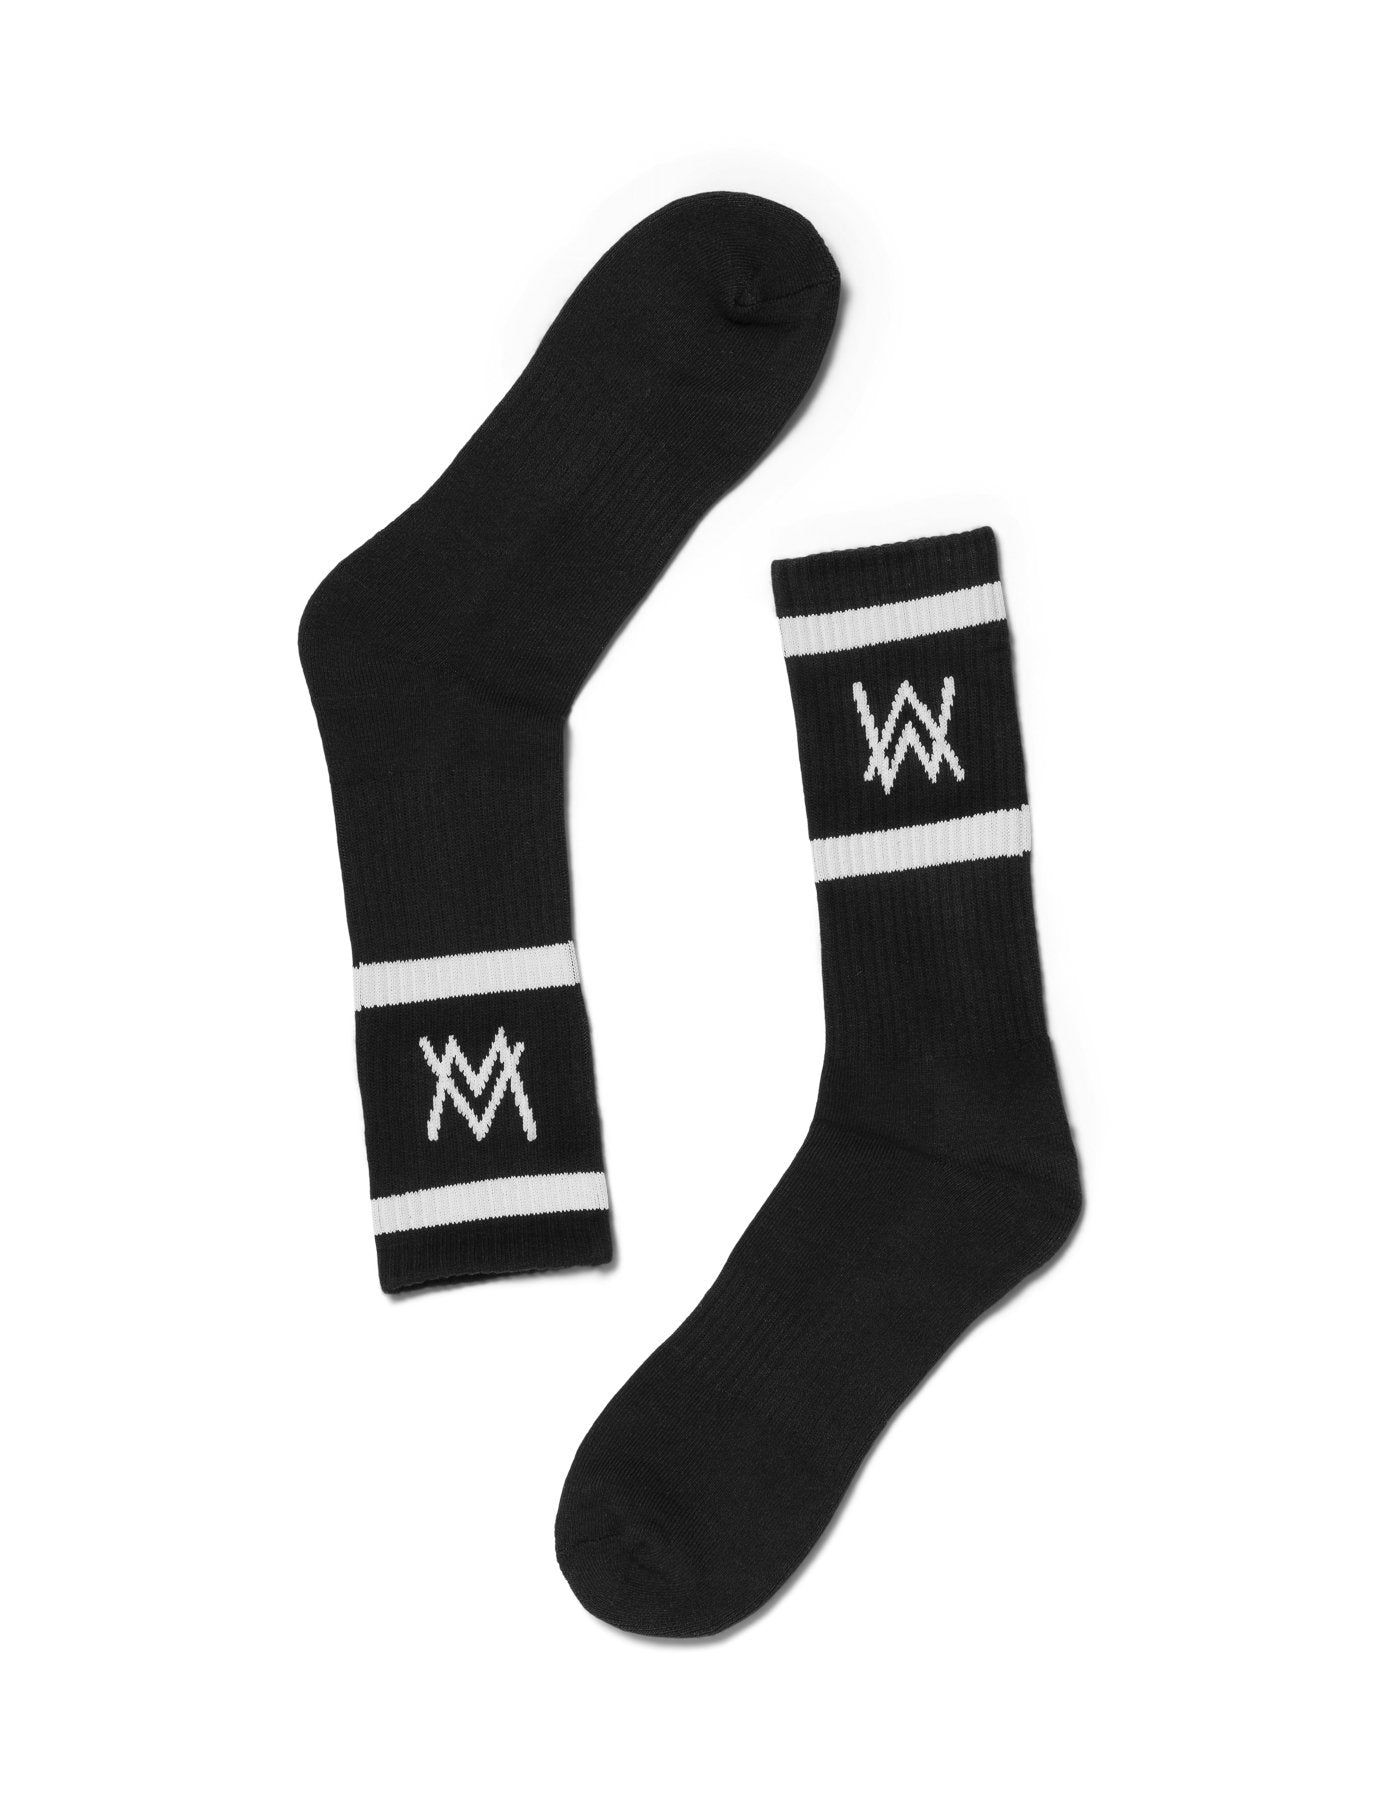 AW LOGO SPORTS SOCKS - BLACK/WHITE Socks Alan Walker Official Merchandise 